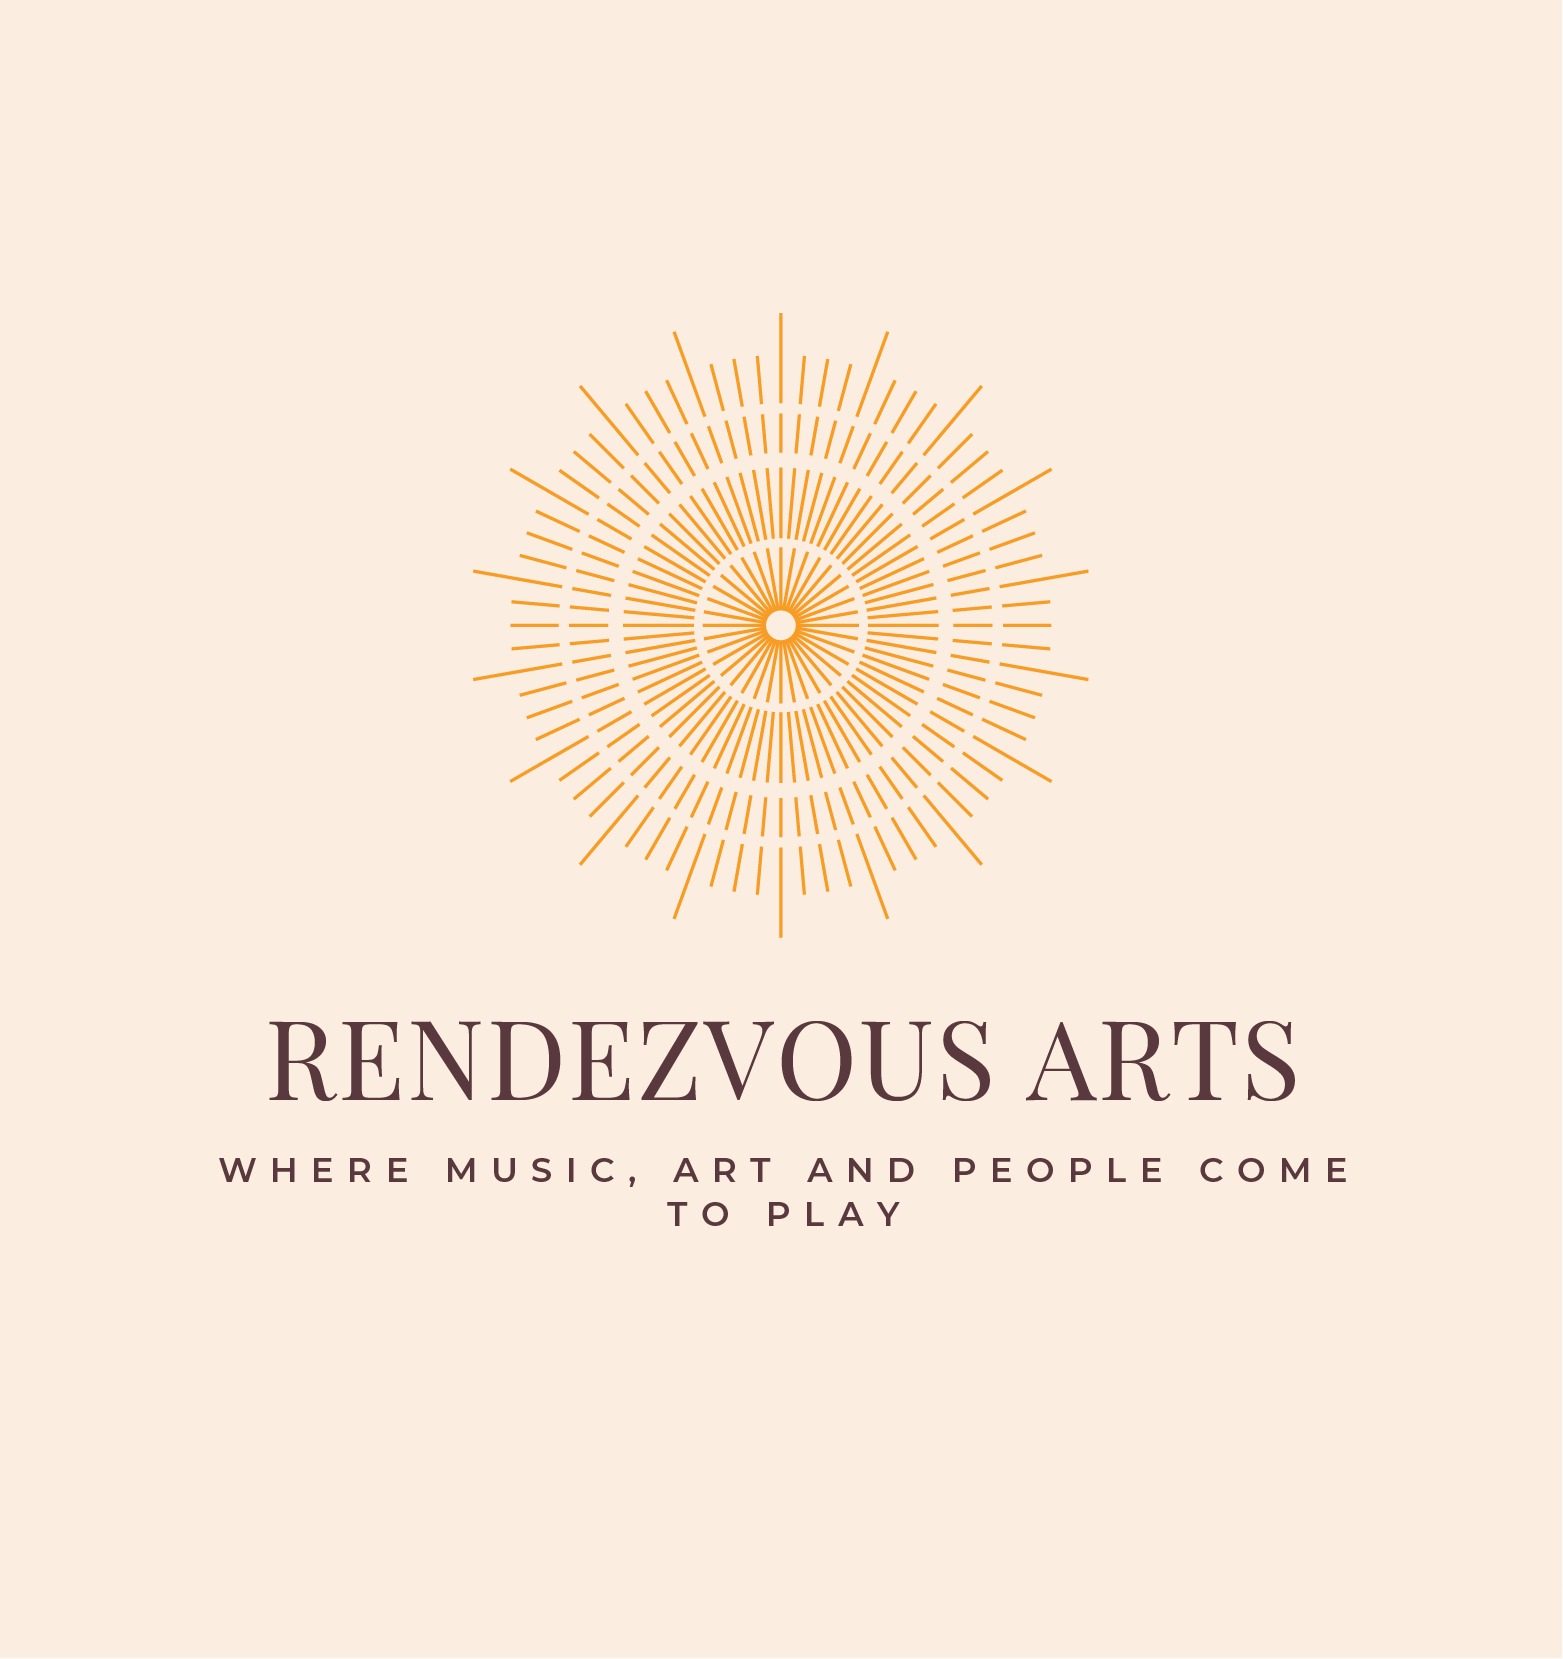 Rendezvous Arts